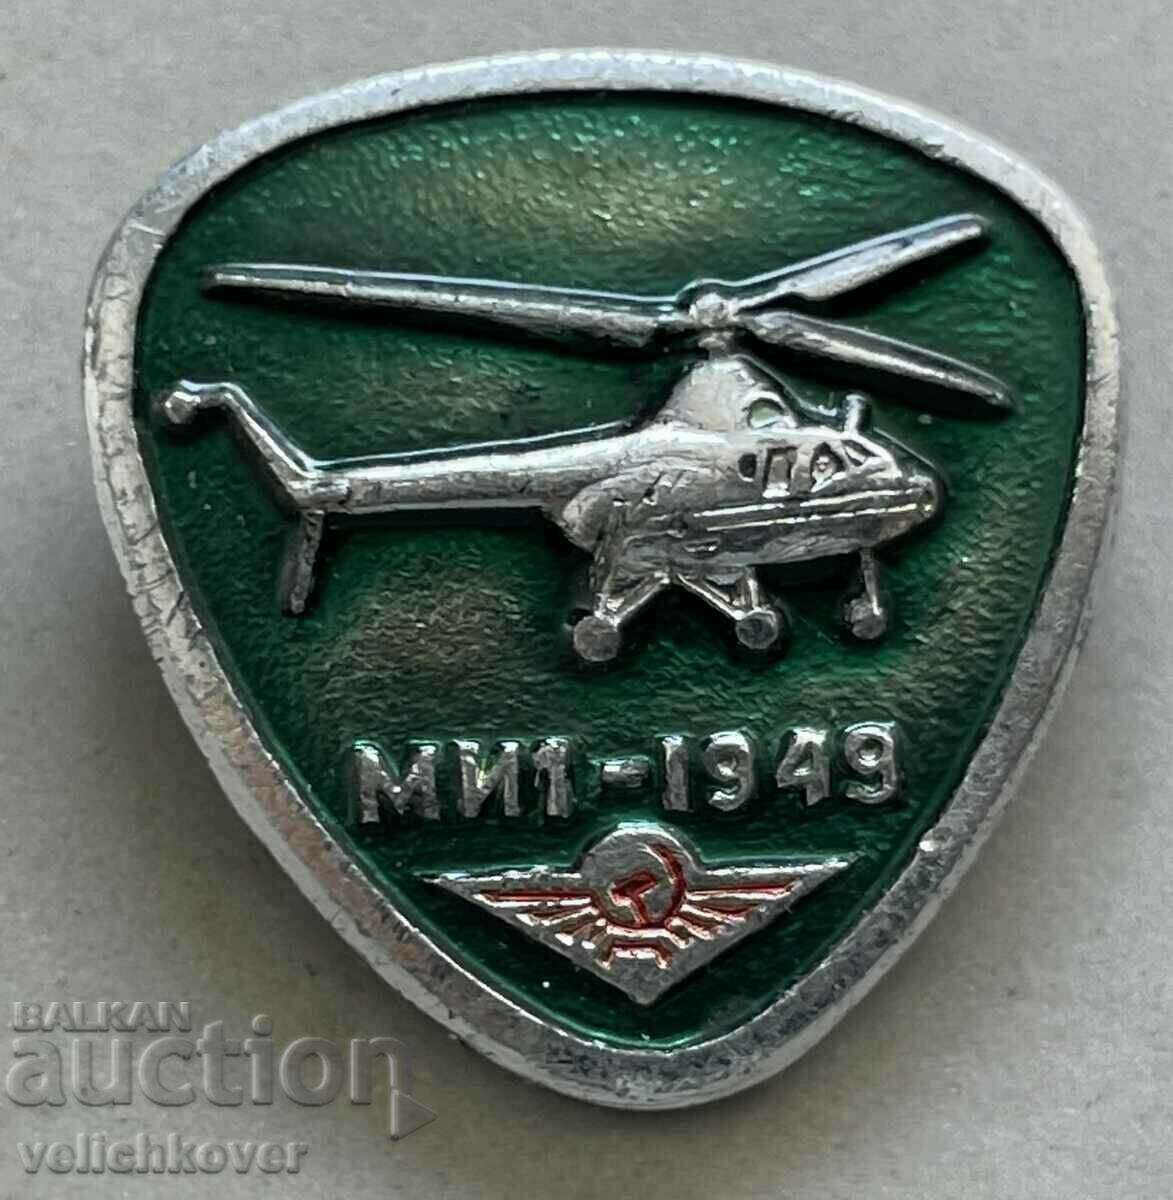 35367 Ελικόπτερο με διακριτικά ΕΣΣΔ μοντέλο MI1 1949.